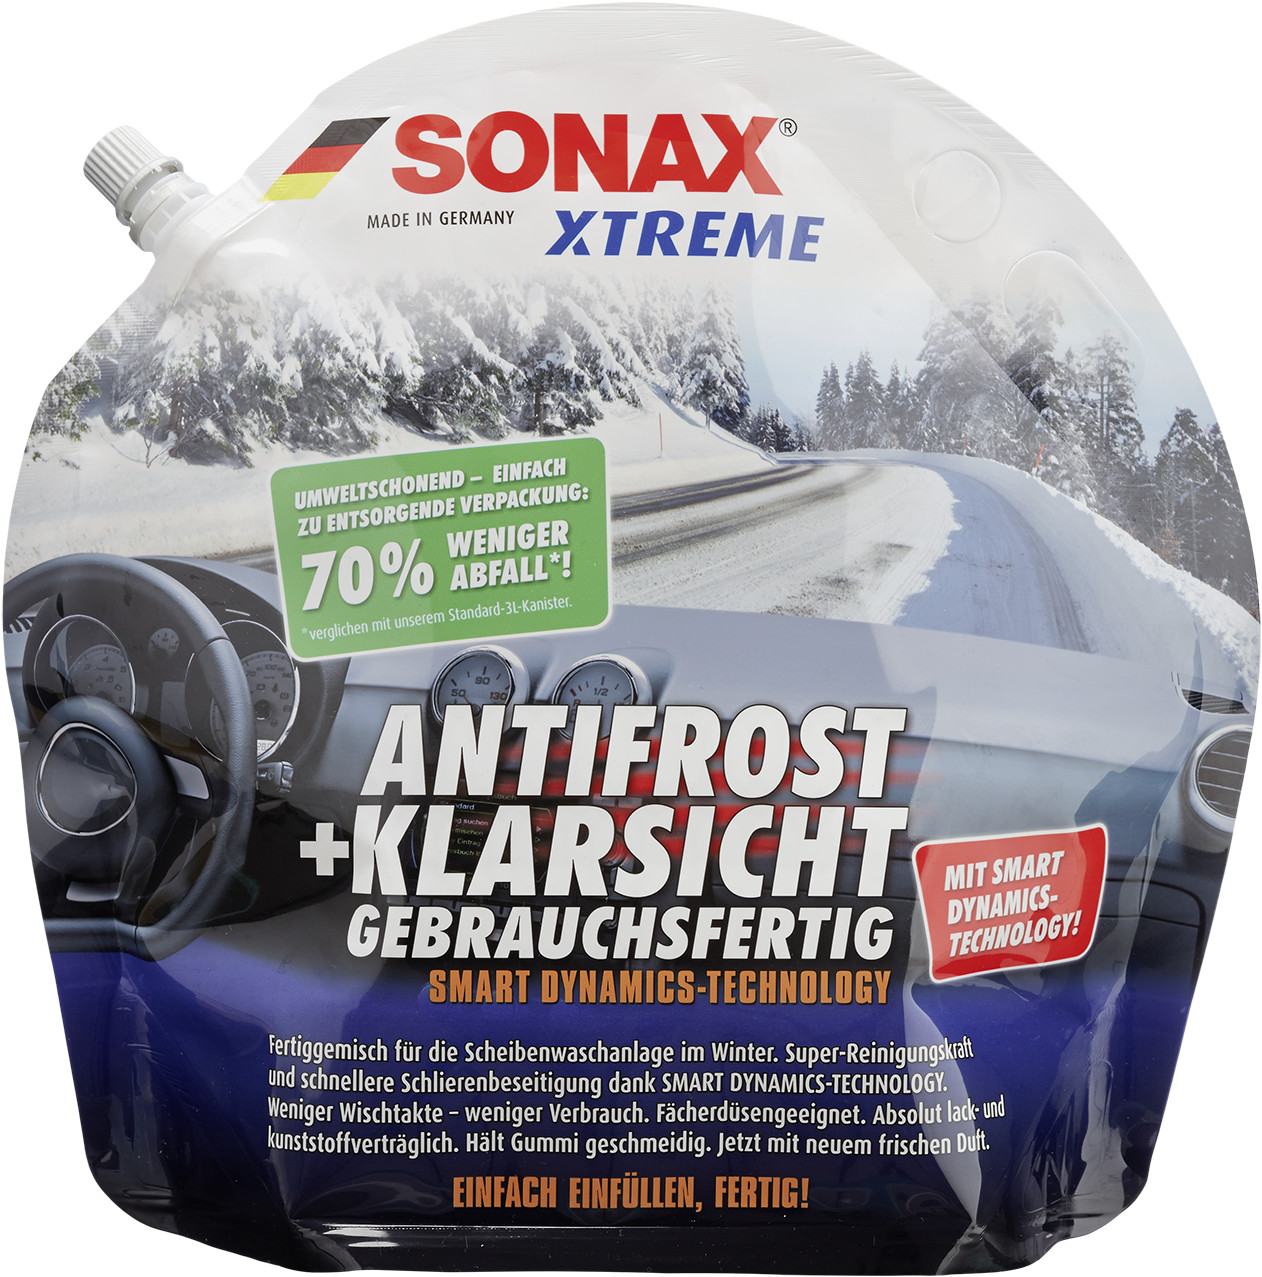 Sonax Xtreme AntiFrost&KlarSicht gebrauchsfertig (3 l) ab 10,80